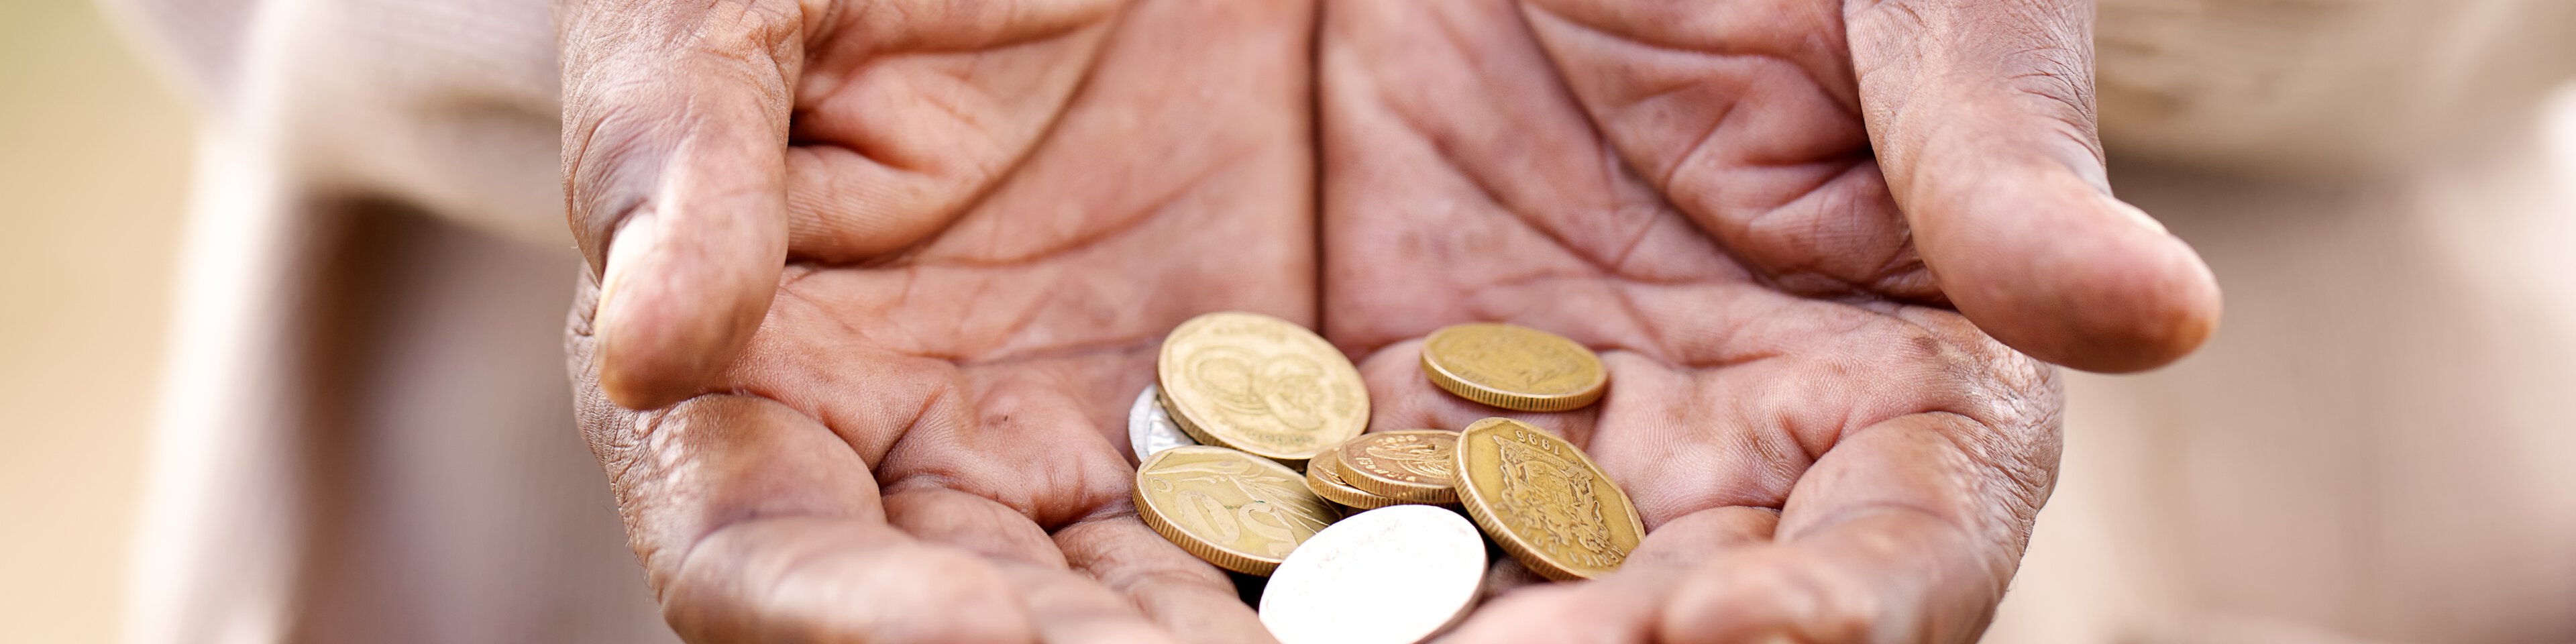 Zwei ältere Hände halten ein paar Münzen | © Nolte Lourens - Fotolia